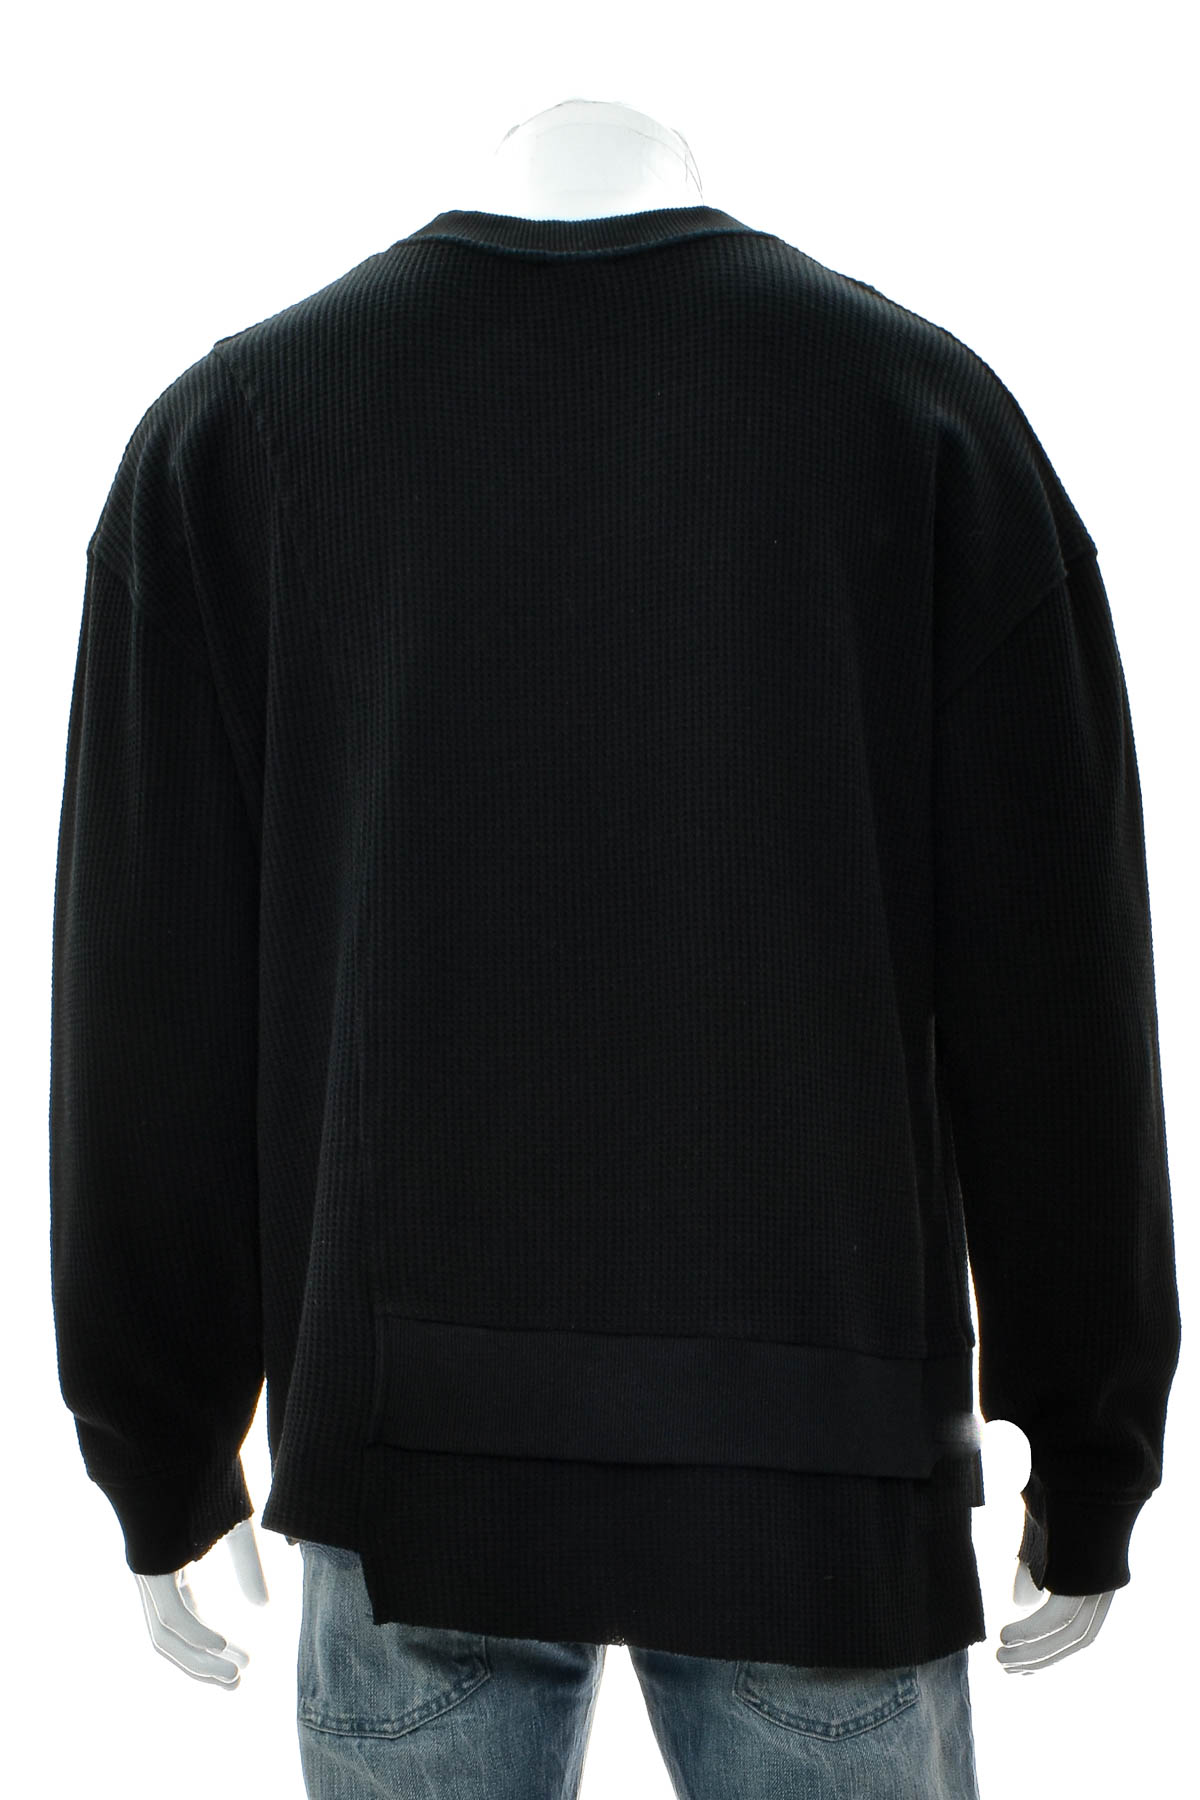 Men's sweater - ZARA - 1